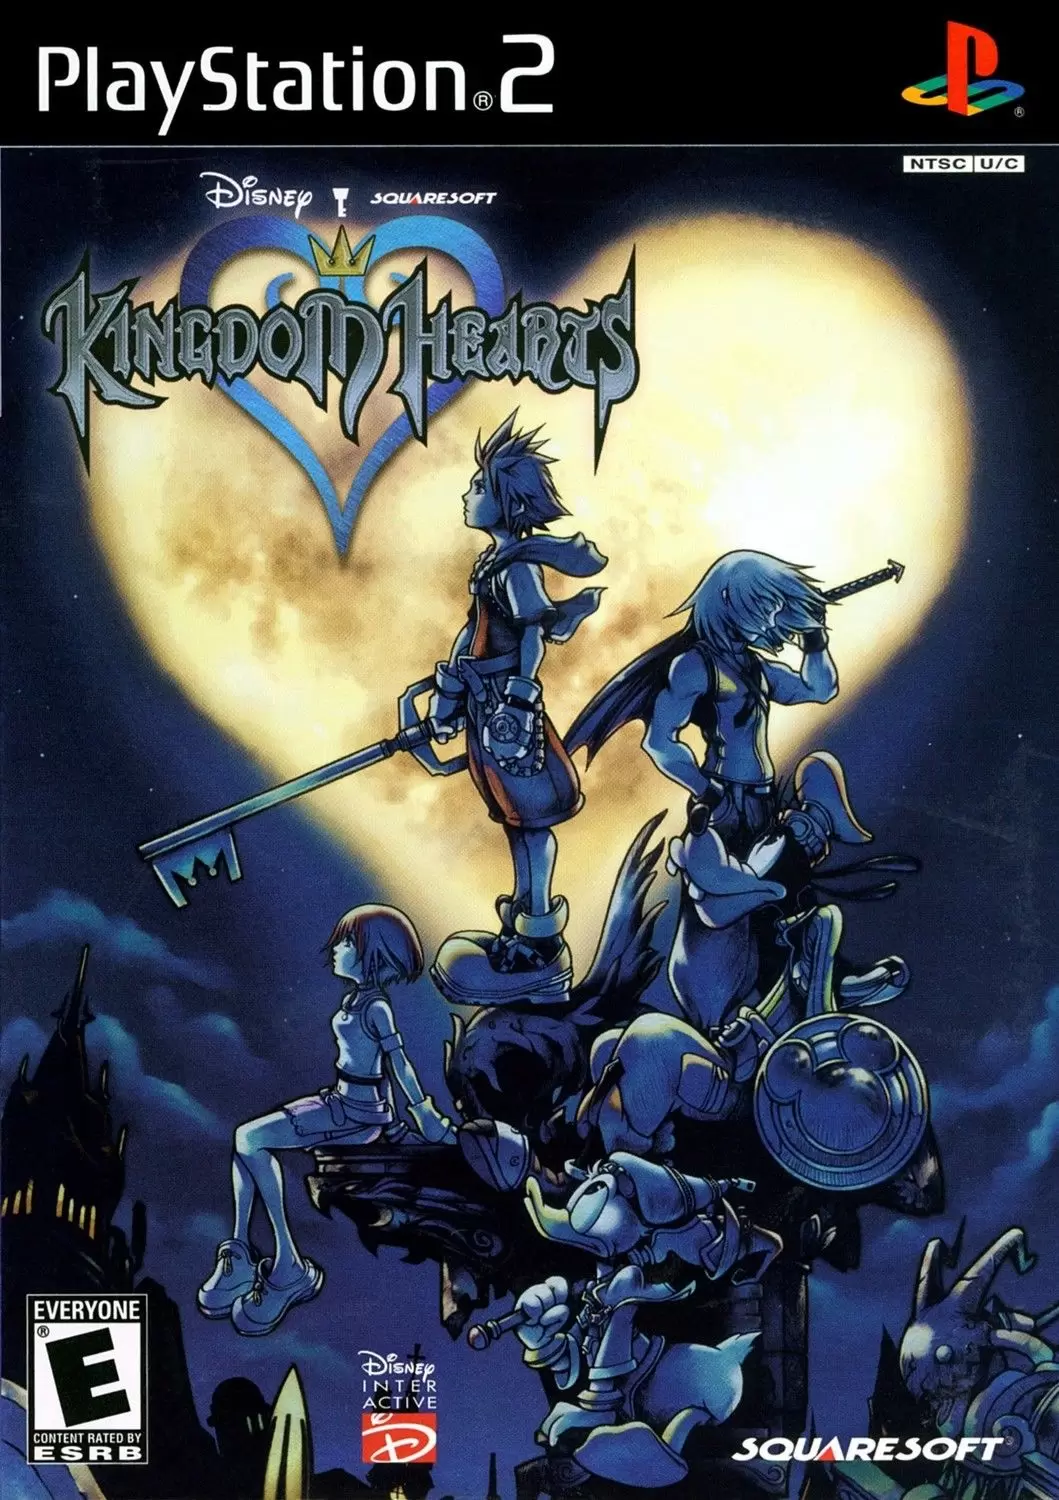 PS2 Games - Kingdom Hearts